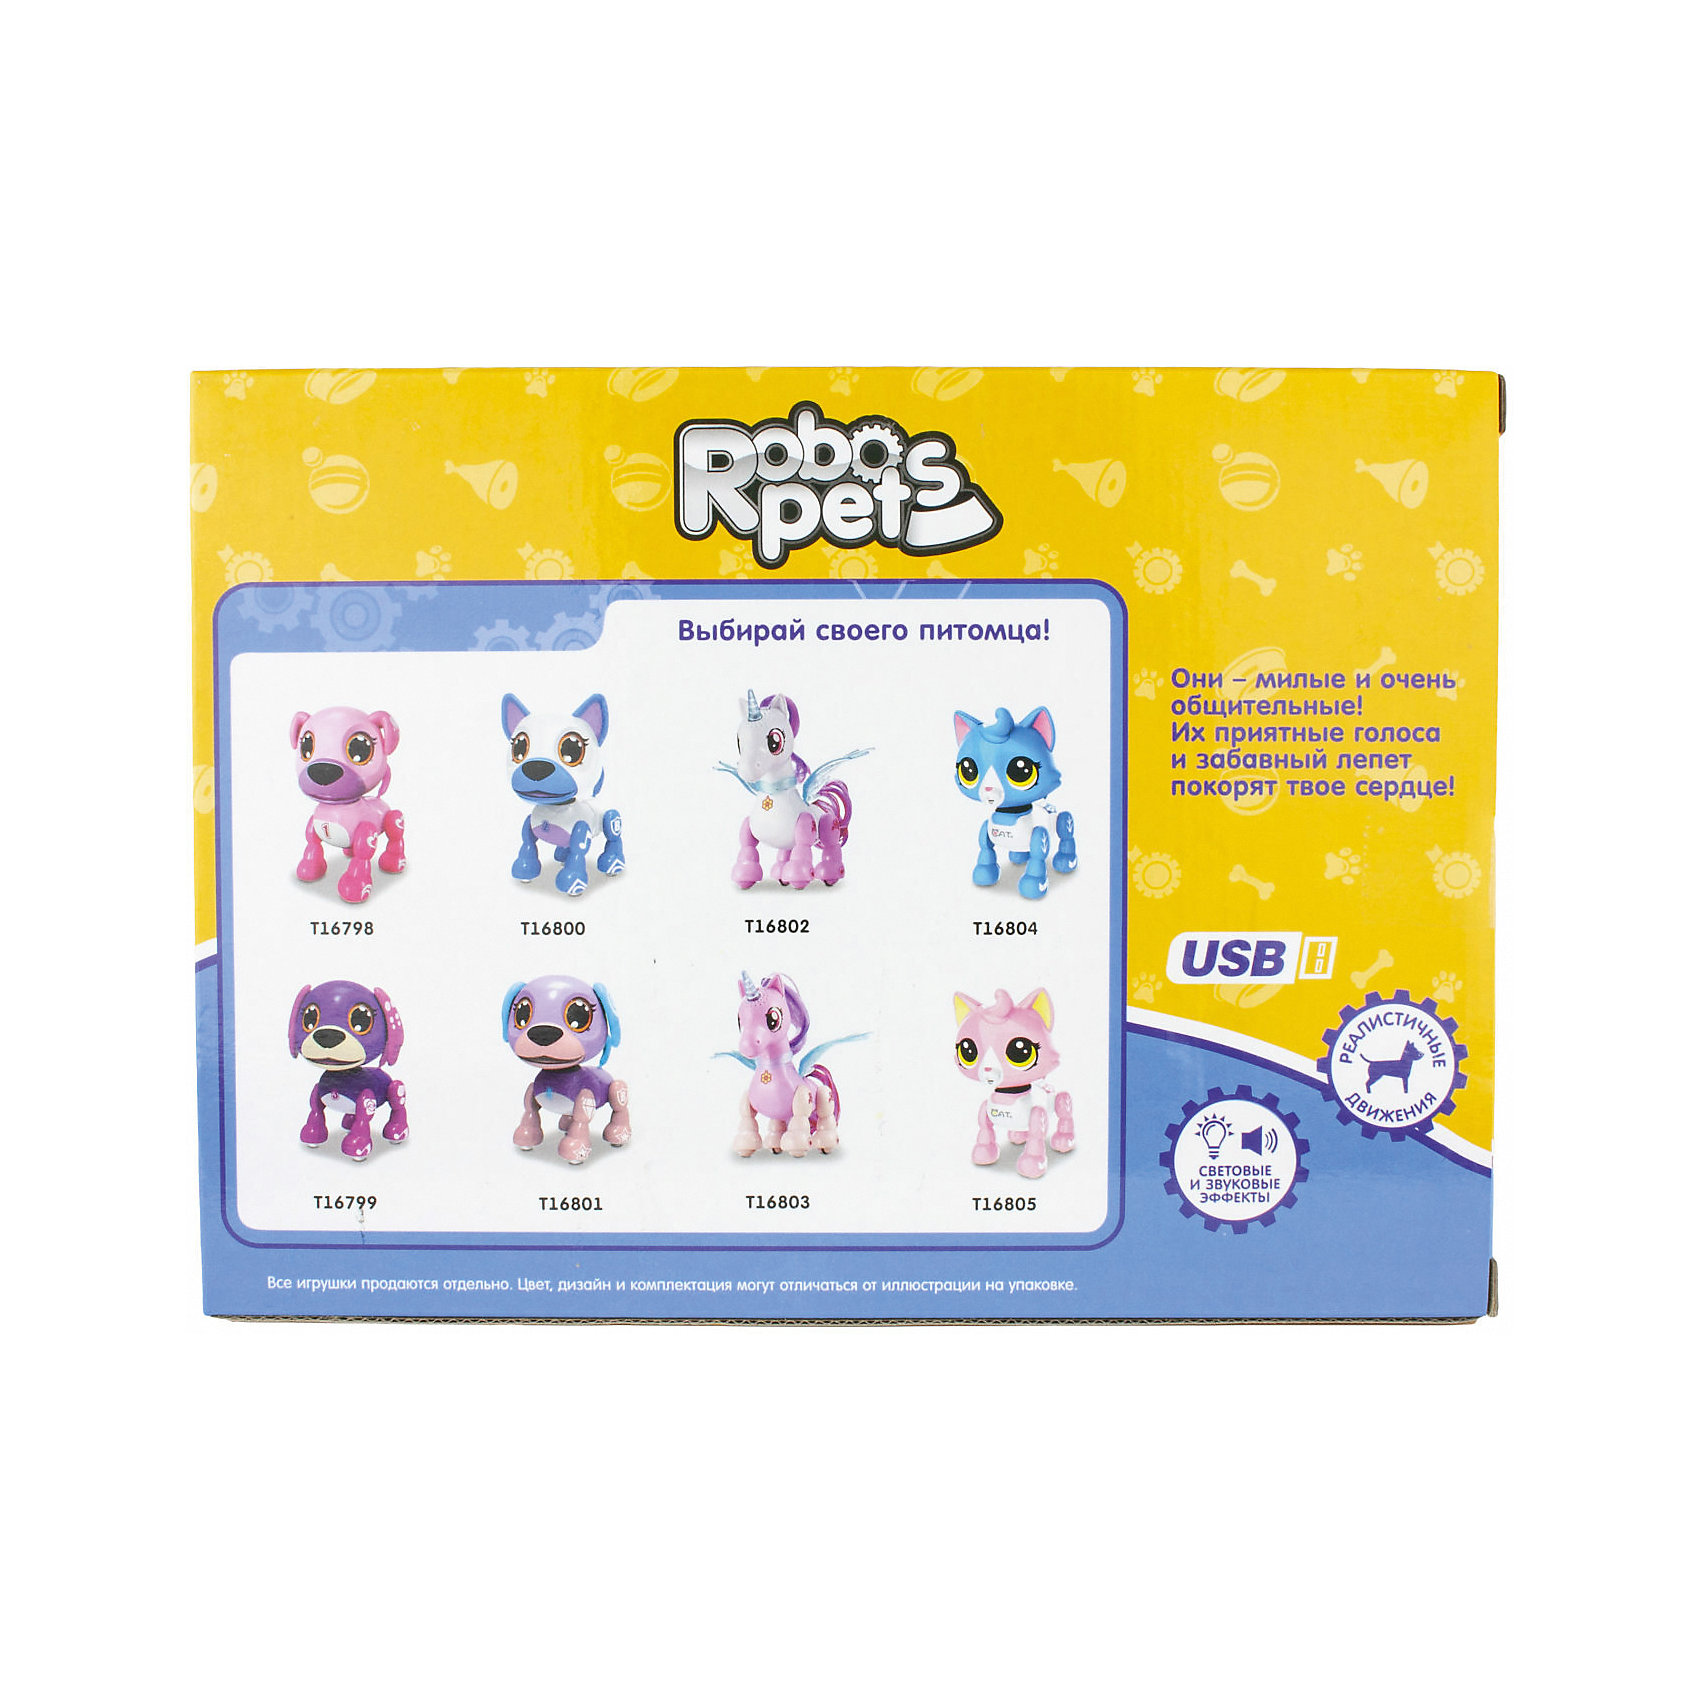 Интерактивная игрушка Robo Pets Робо-щенок, бело-голубой 1Toy 13335240